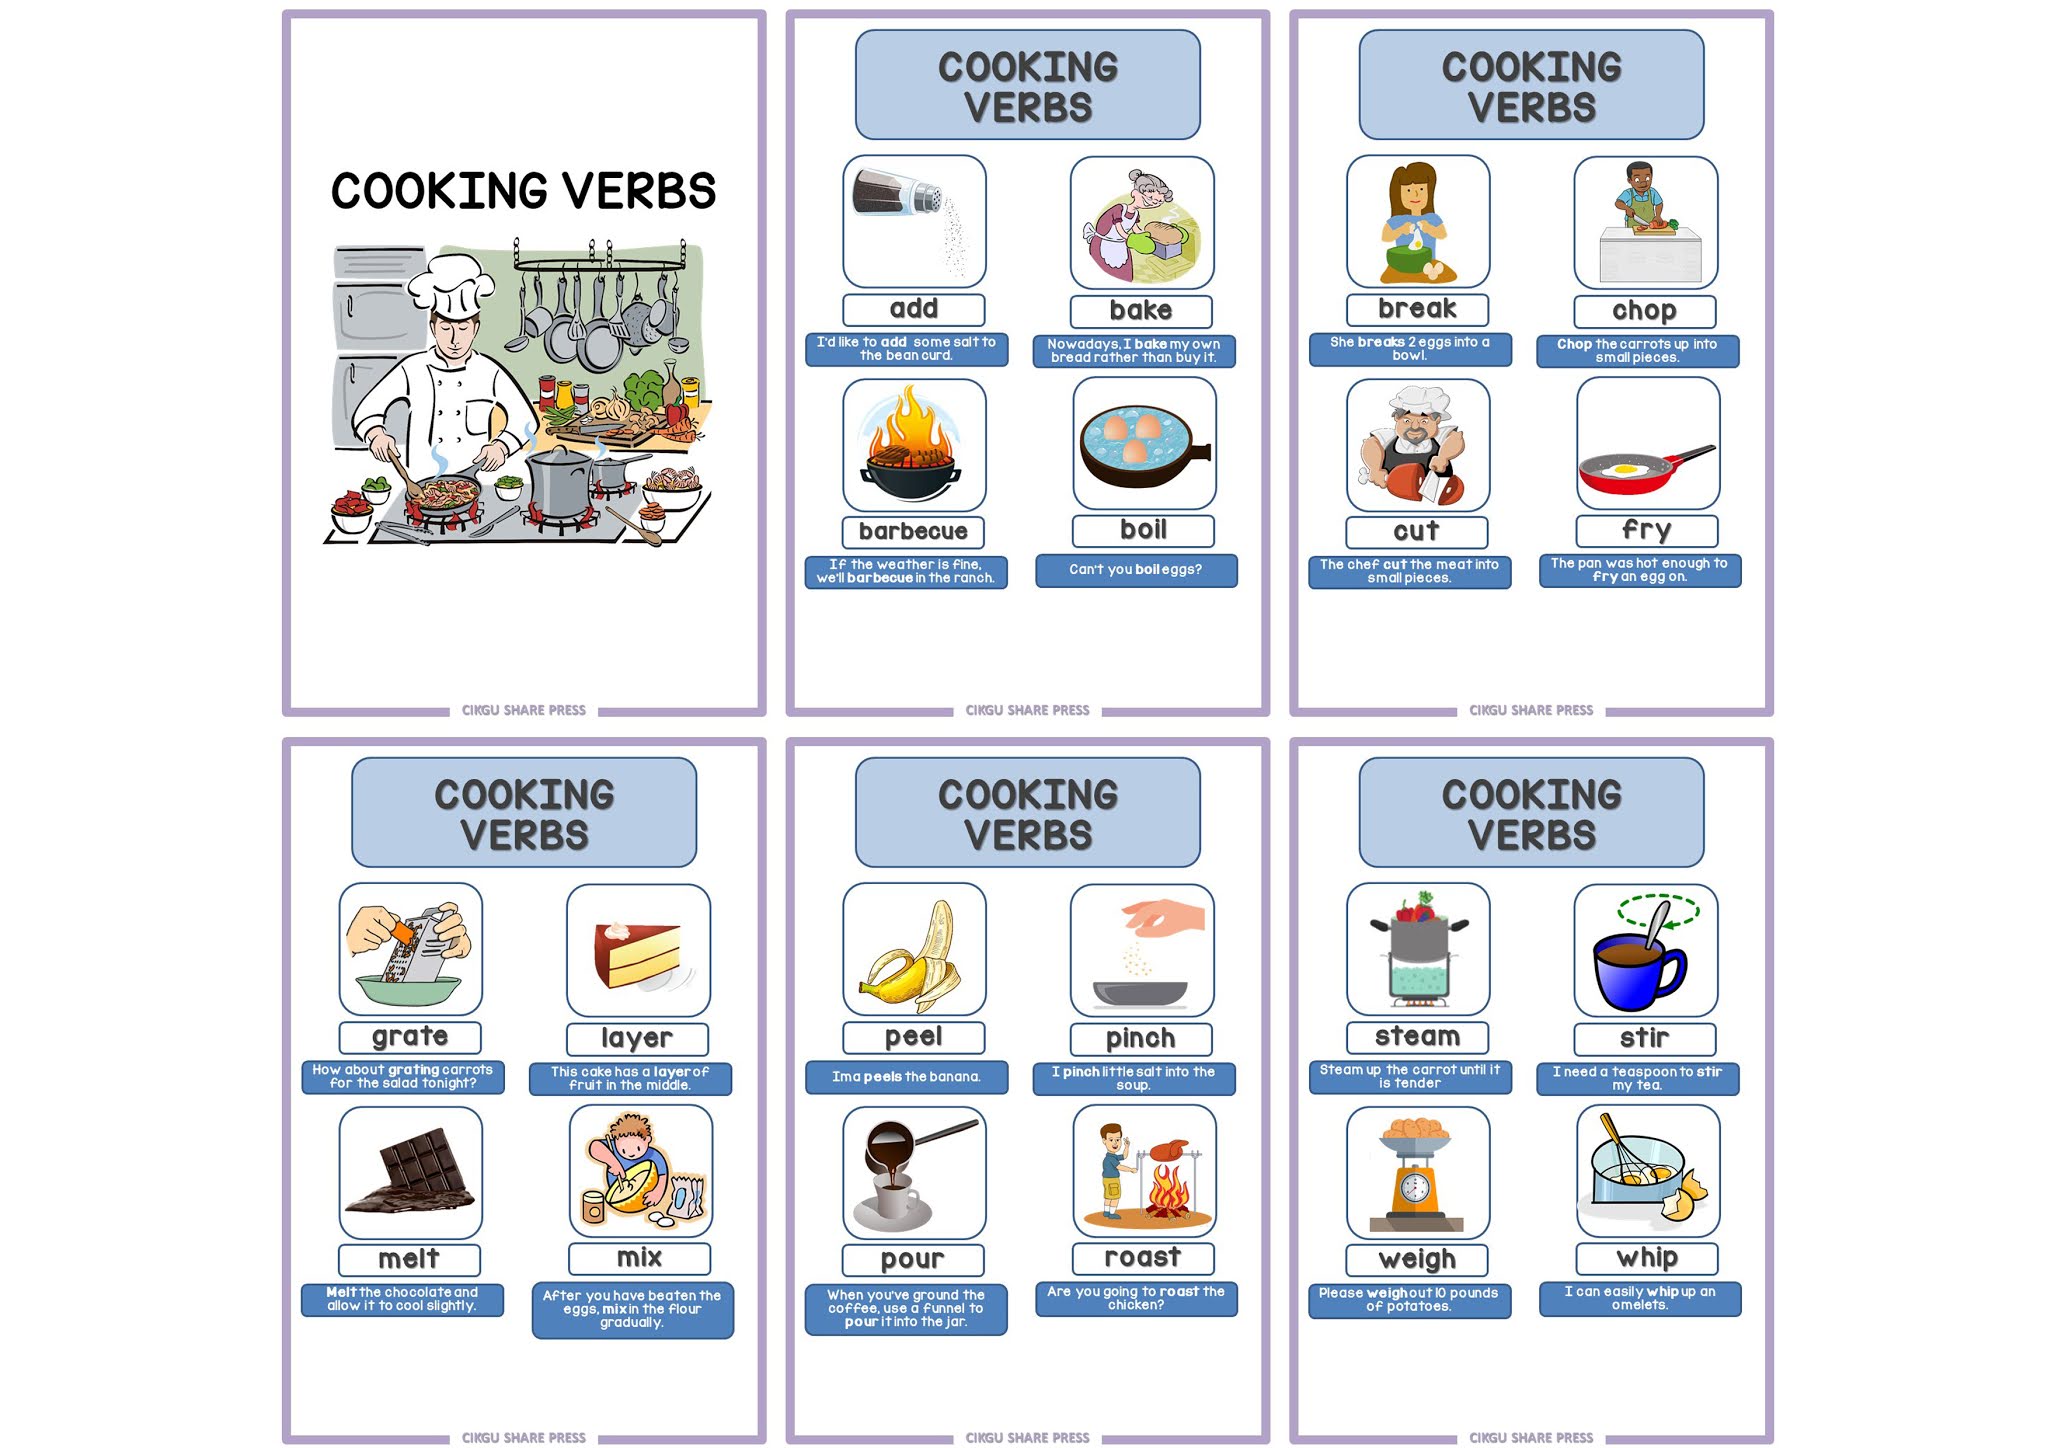 Cook в прошедшем. Cooking verbs. Cooking verbs Dictionary. Cooking verbs picture Dictionary. To spread Cooking verb.